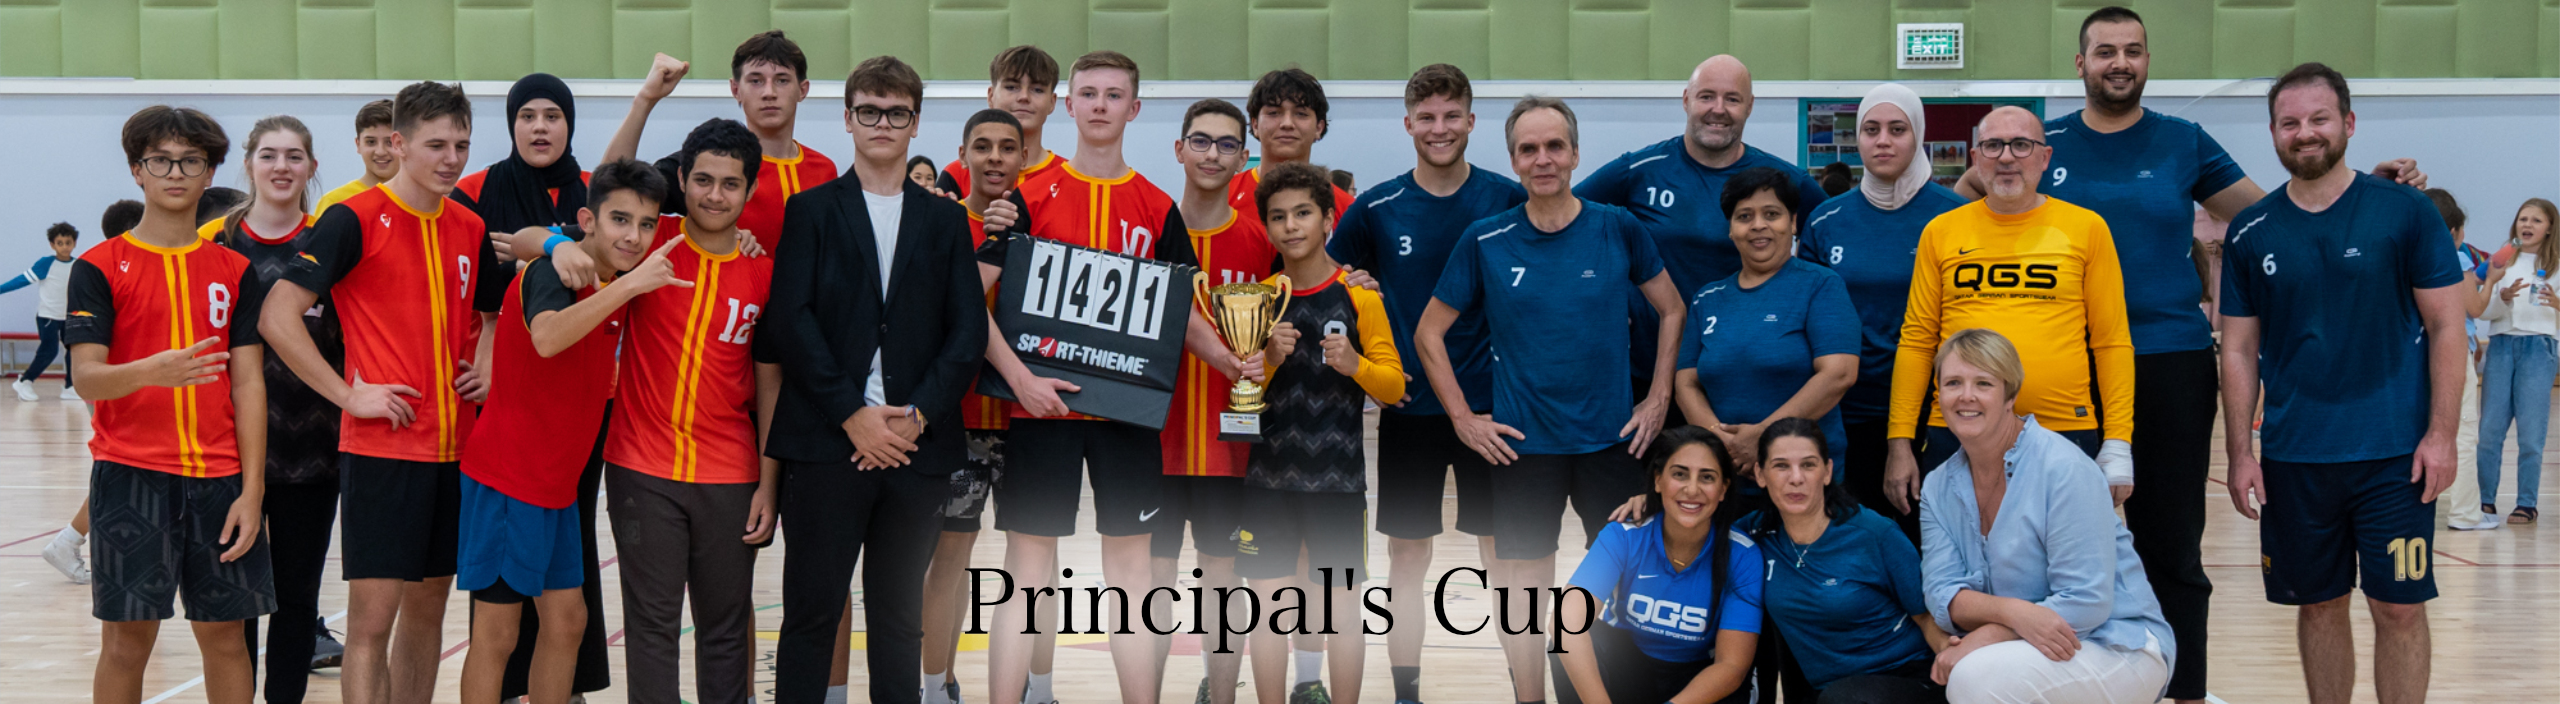 Principal's Cup